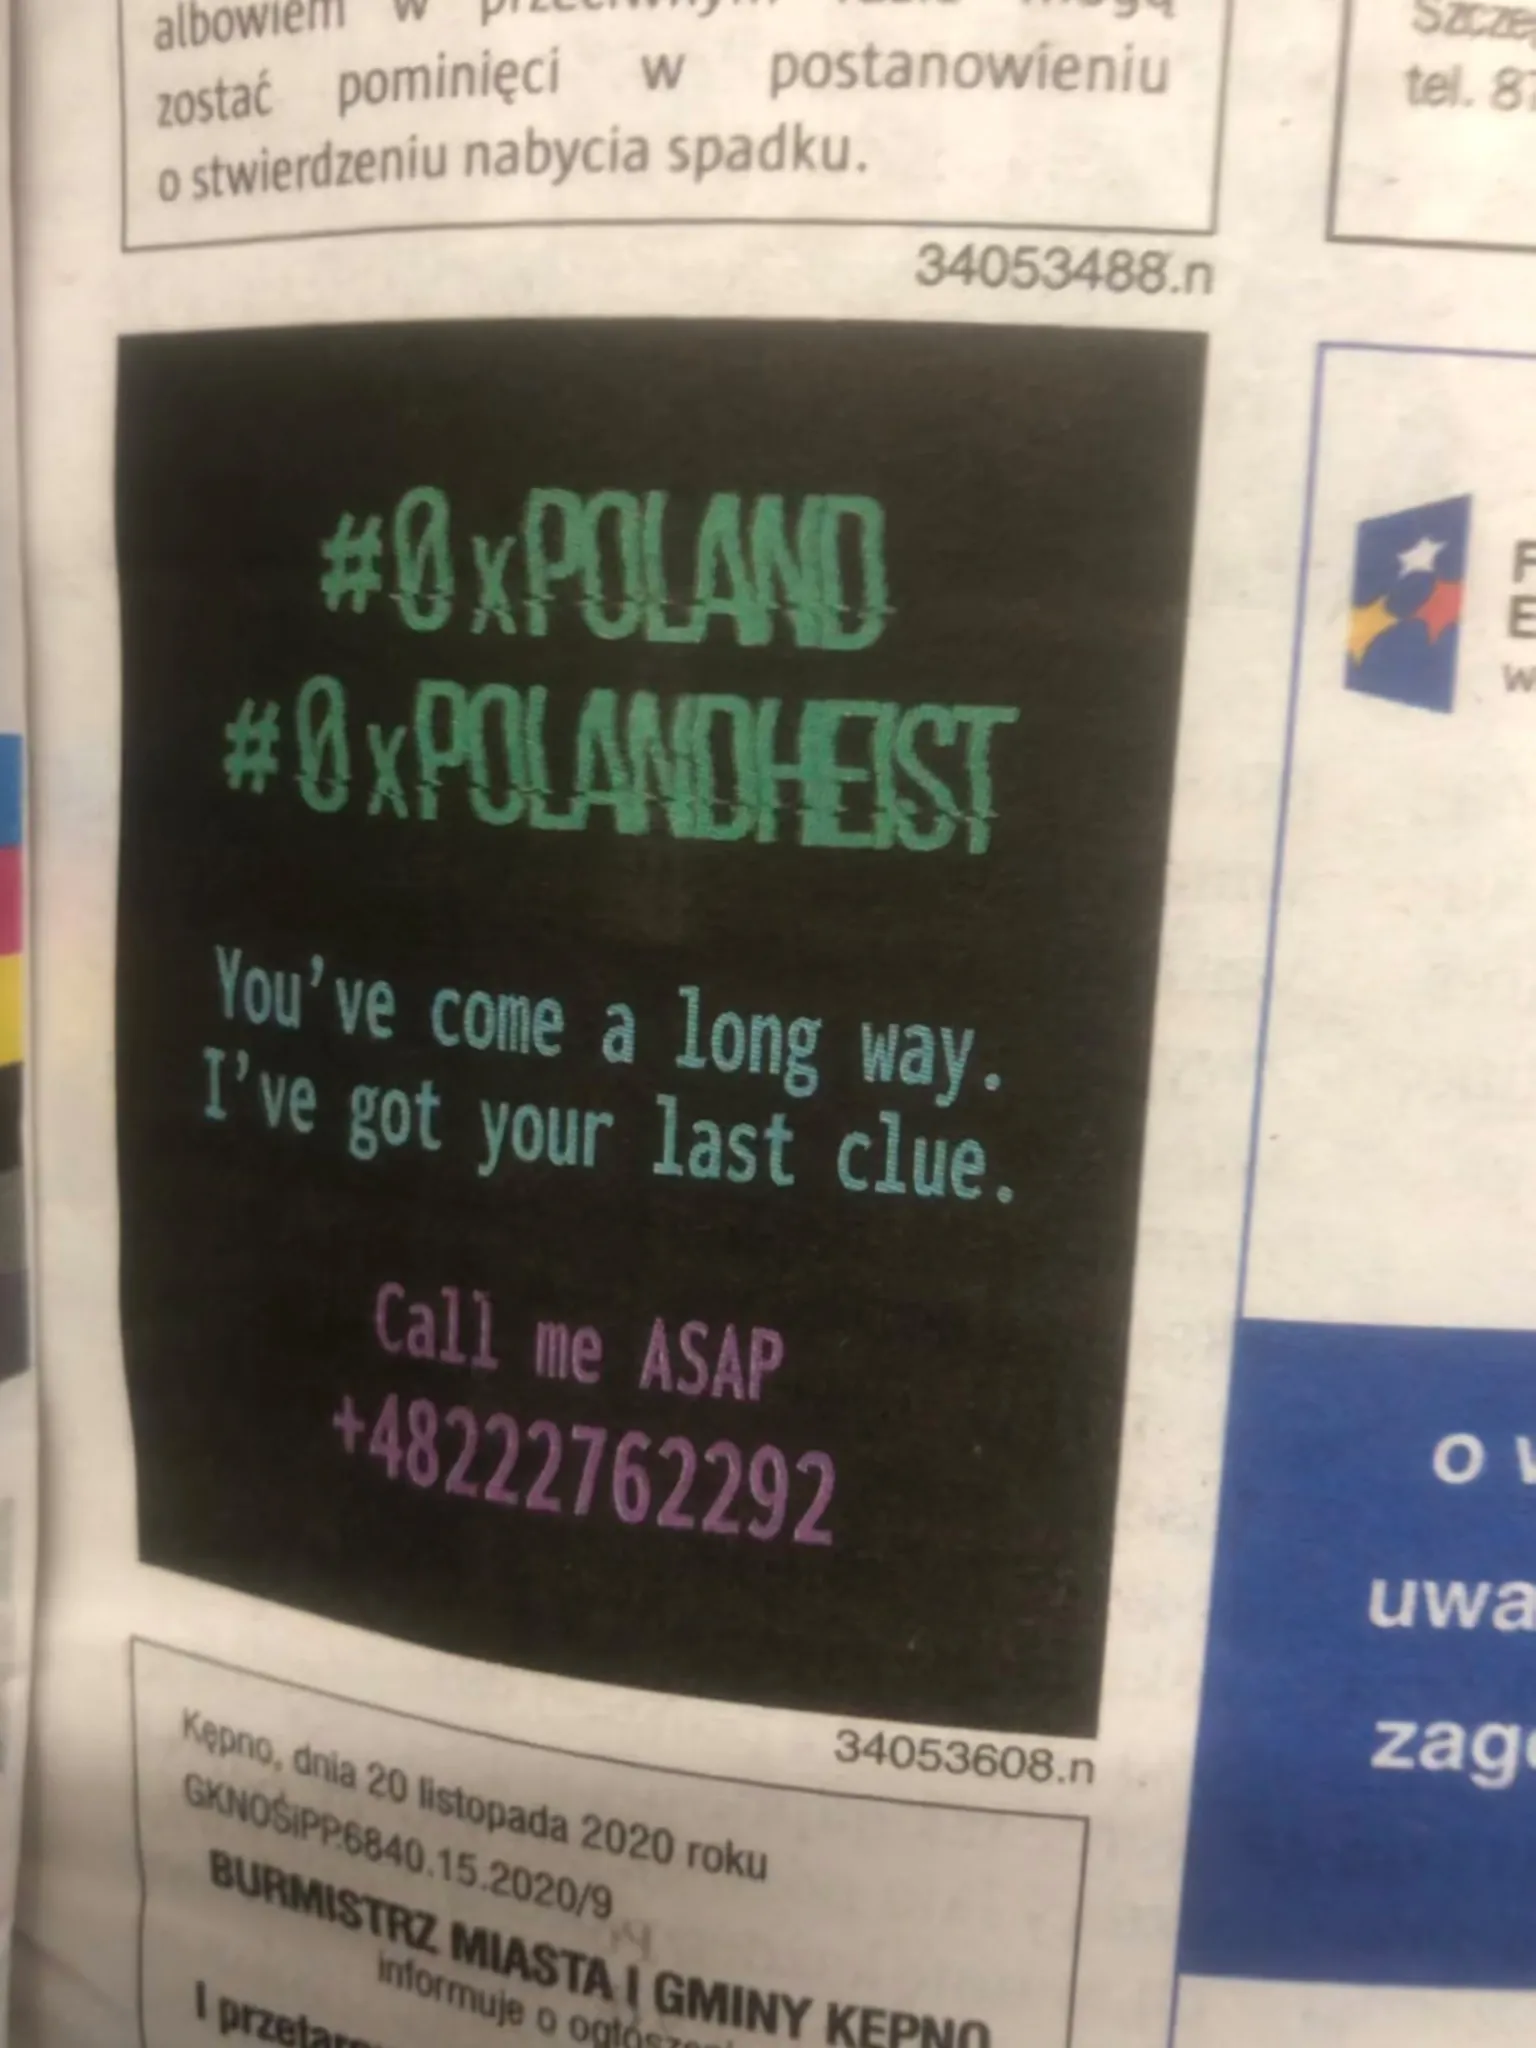 0xPoland's ad in Gazeta Wyborcza